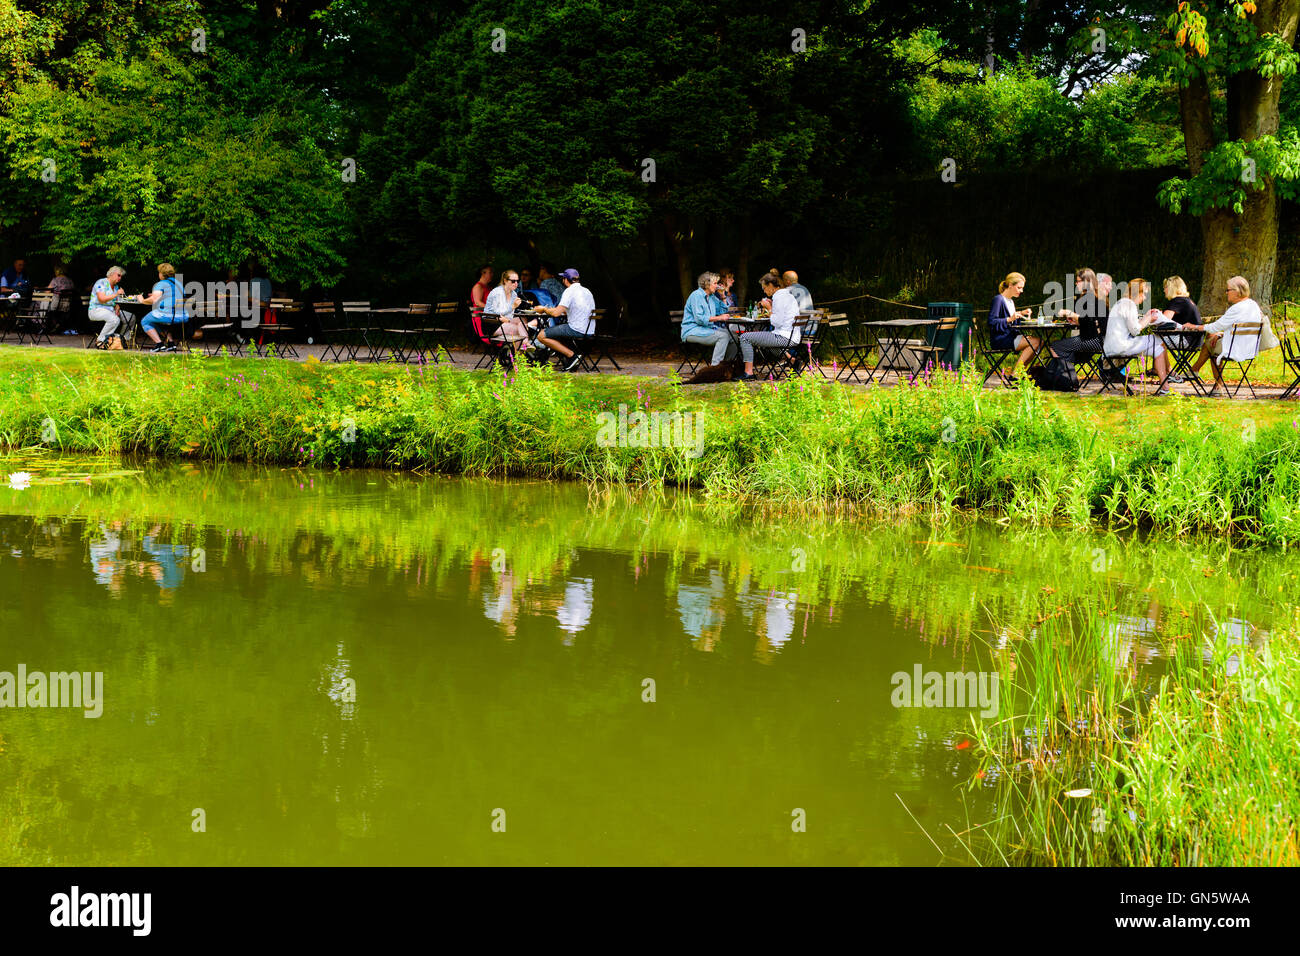 Lund, Suède - 24 août 2016 : Les gens en train de déjeuner à côté d'un étang d'eau je le public jardin botanique. Goldfish swimming in wate Banque D'Images